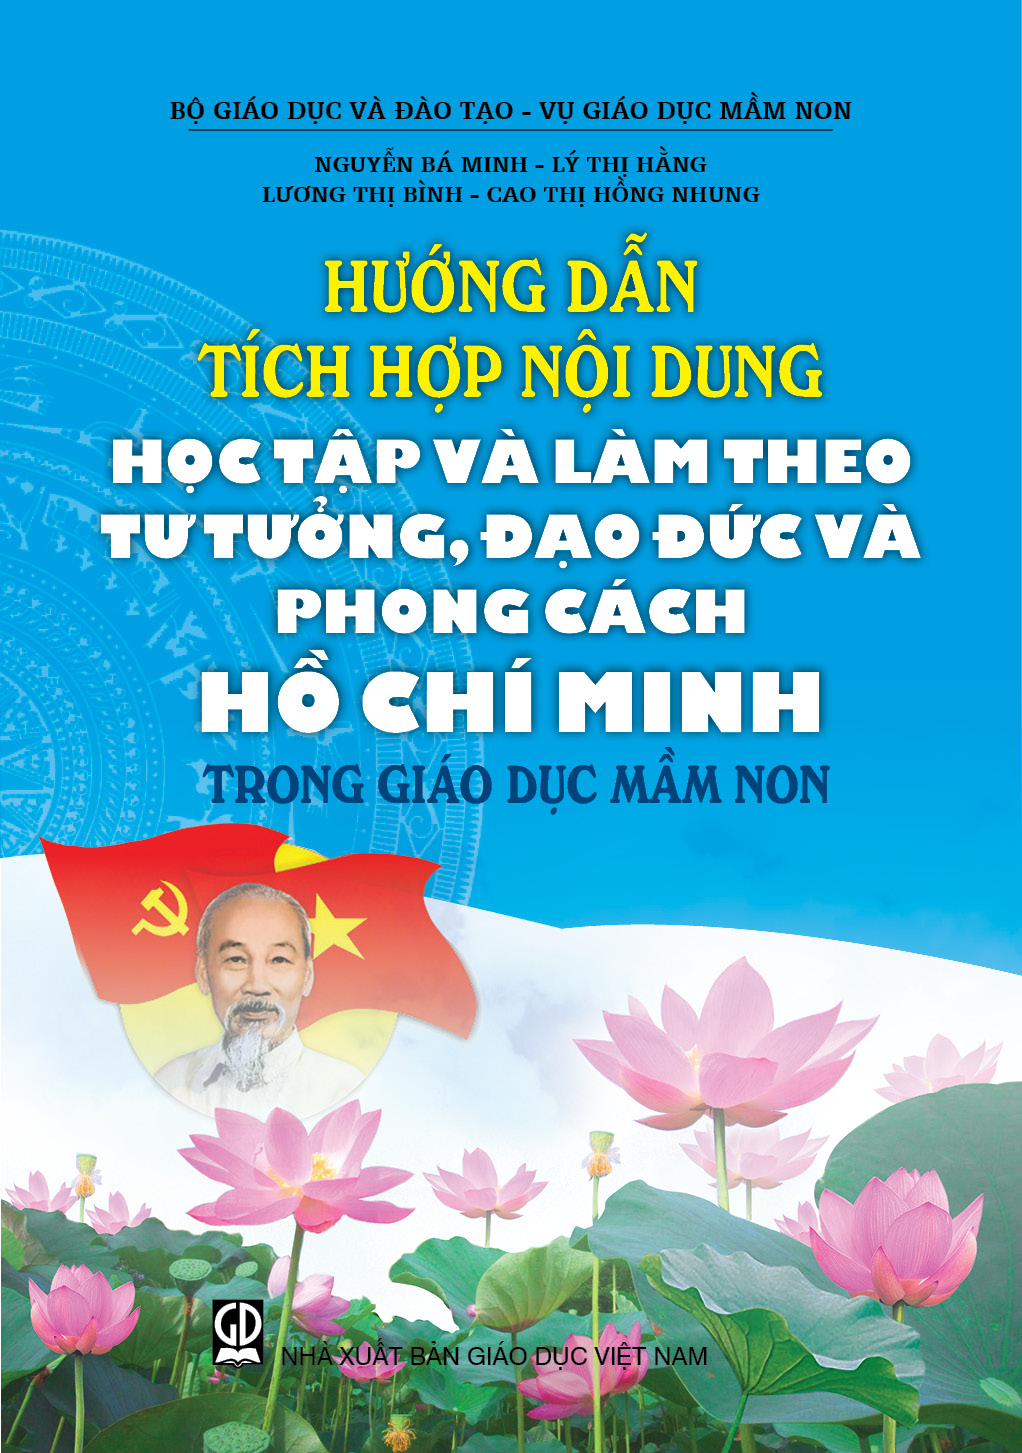 Hướng dẫn tích hợp nội dung học tập và làm theo tư tưởng, đạo đức và phong cách Hồ Chí Minh trong giáo dục mầm non